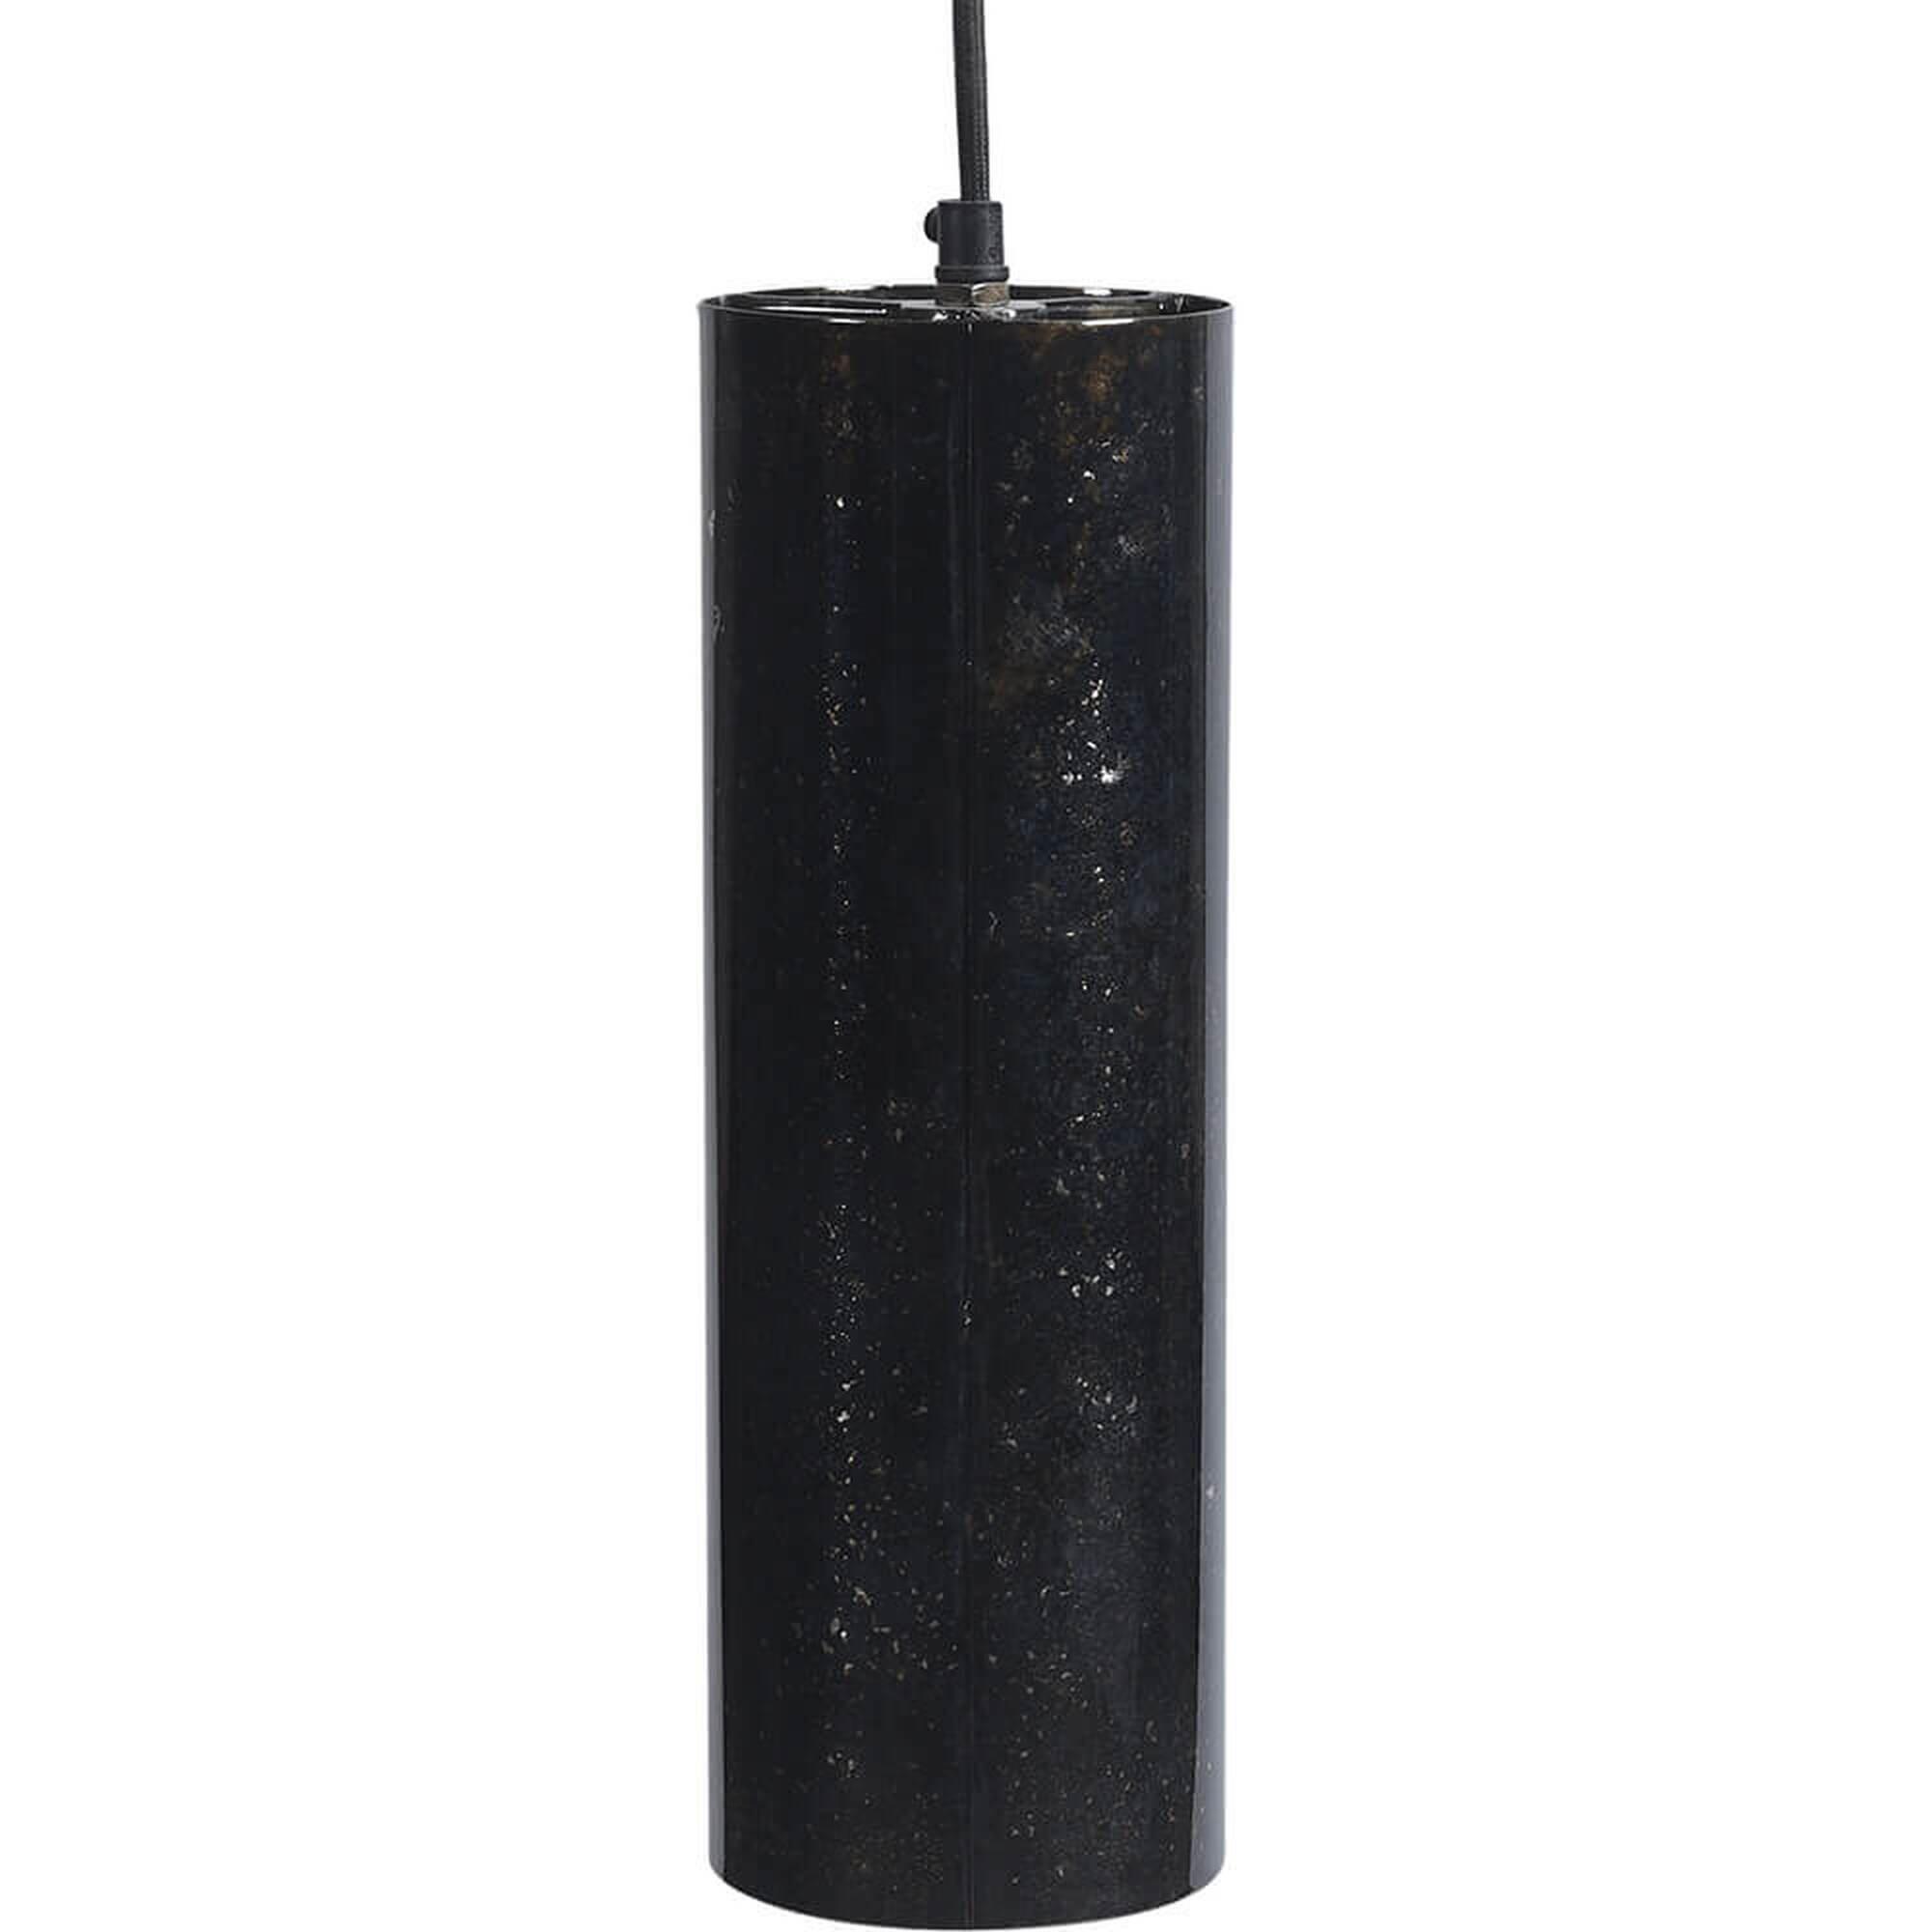  Jonah cylinderformet lampe S - mørkeblå marmoreret fra Trademark Living i Jern (Varenr: M08371)